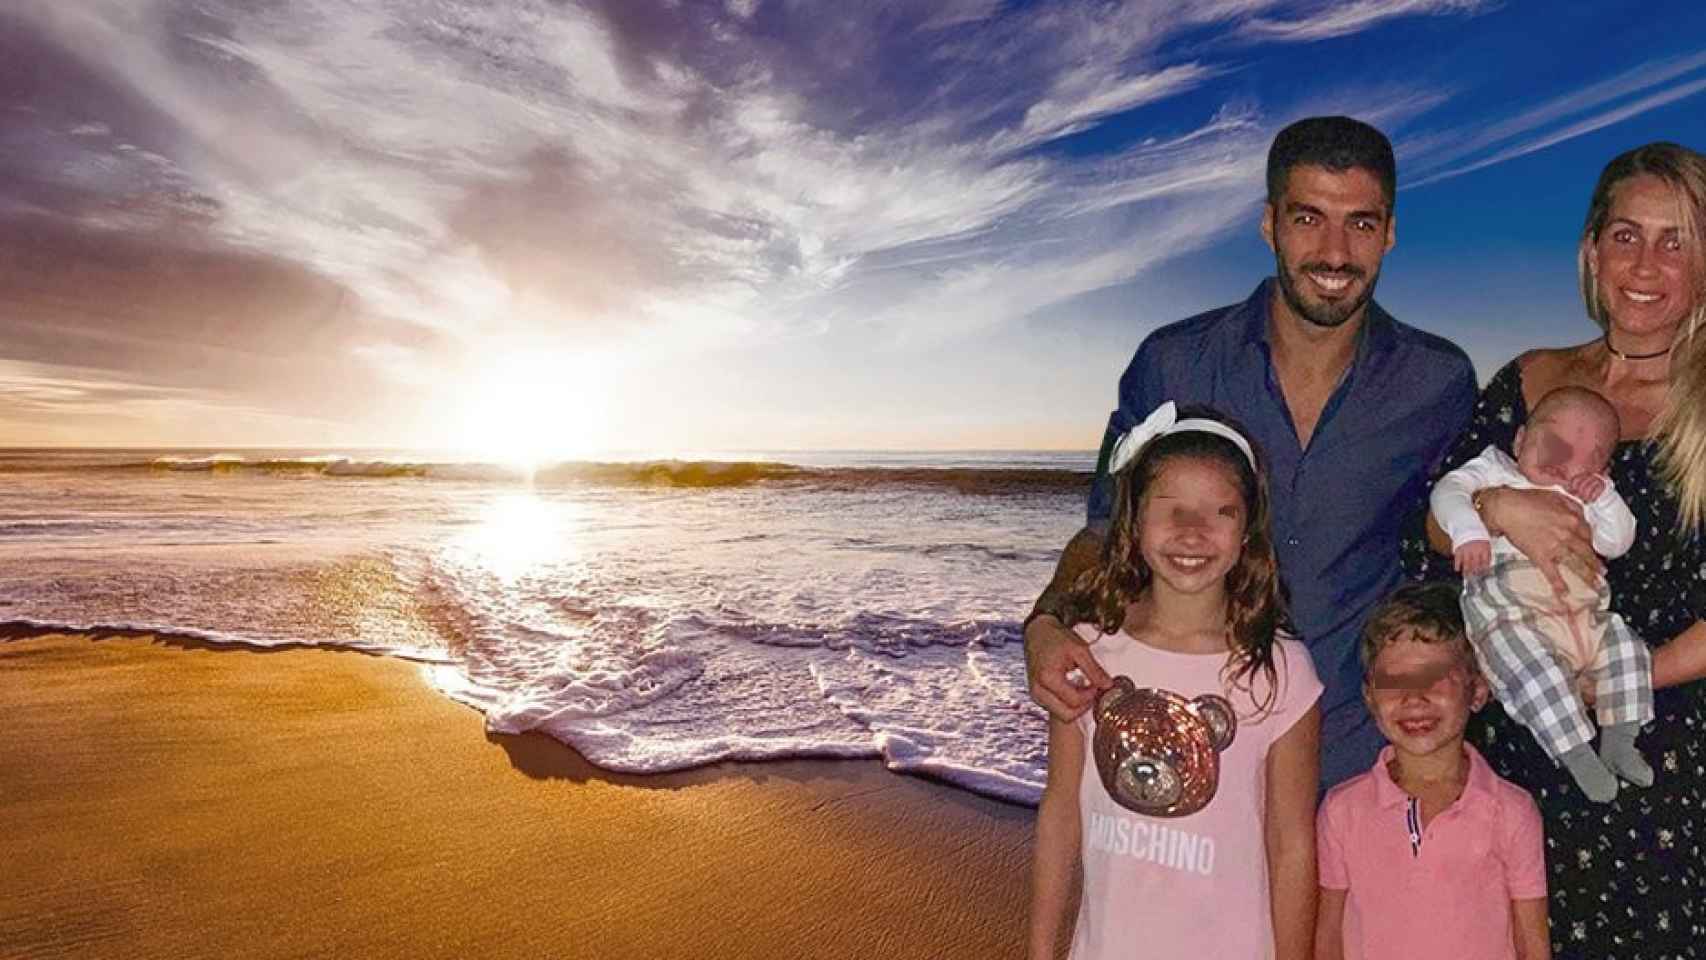 La familia Suárez-Balbi en una playa / FOTOMONTAJE DE CULEMANÍA